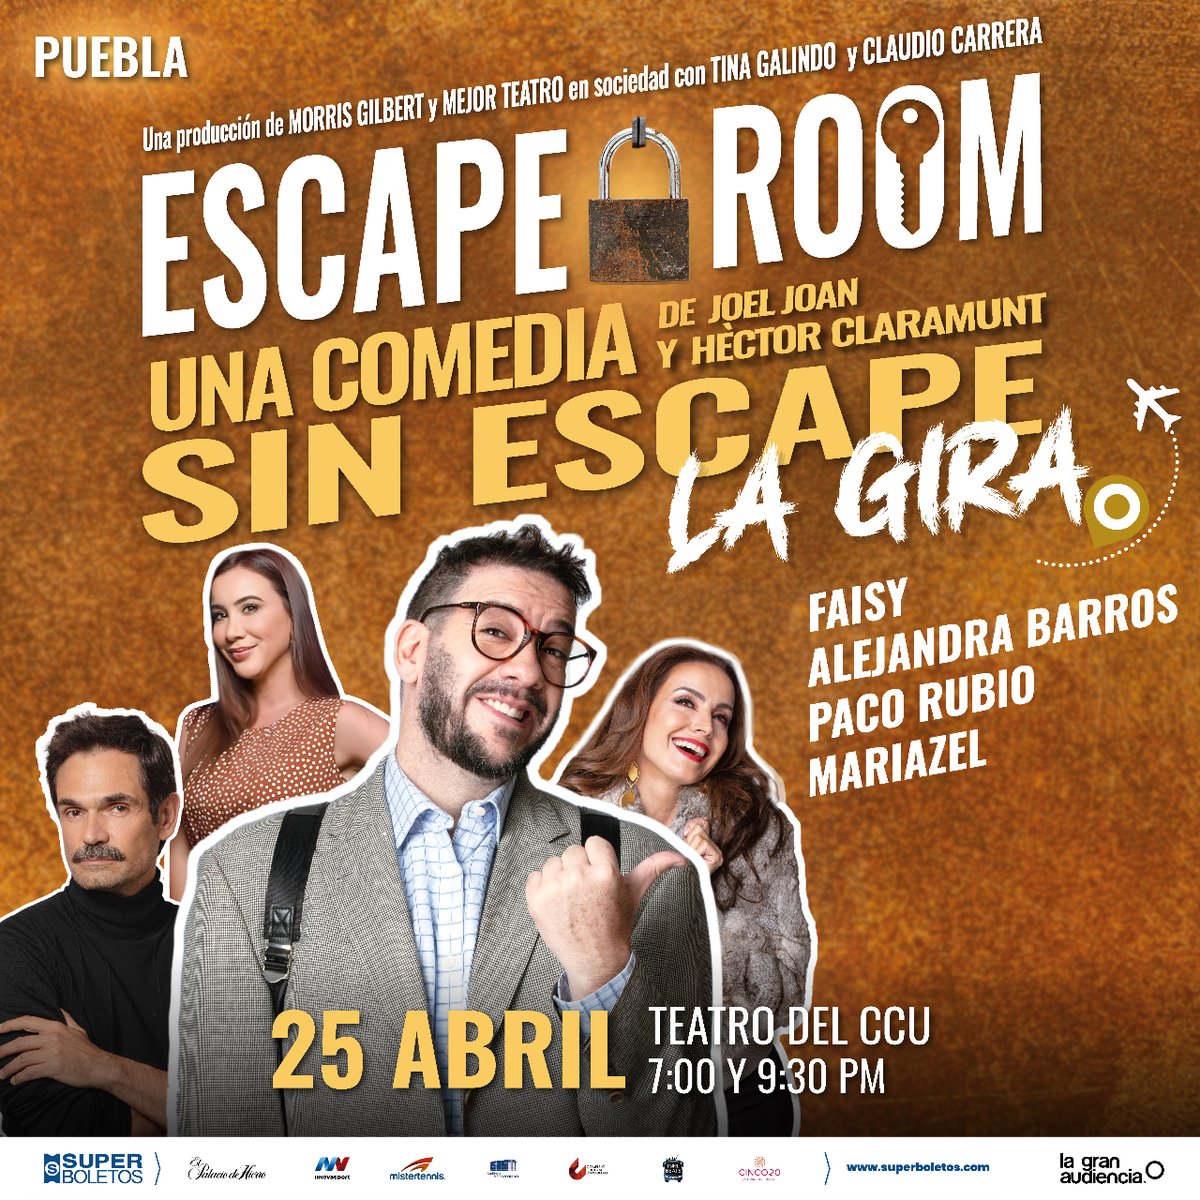 El próximo 25 de abril hay doble función de #Atrapados (Escape Room) en el Teatro del CCU de Puebla. ¿Tú ya tienes tus boletos para acompañarnos? 📍 Puebla - Teatro del CCU 📆 Jueves 25 de abril ⏰ Funciones 7:00 y 9:30 p.m. 🎟️ bit.ly/ERPuebla